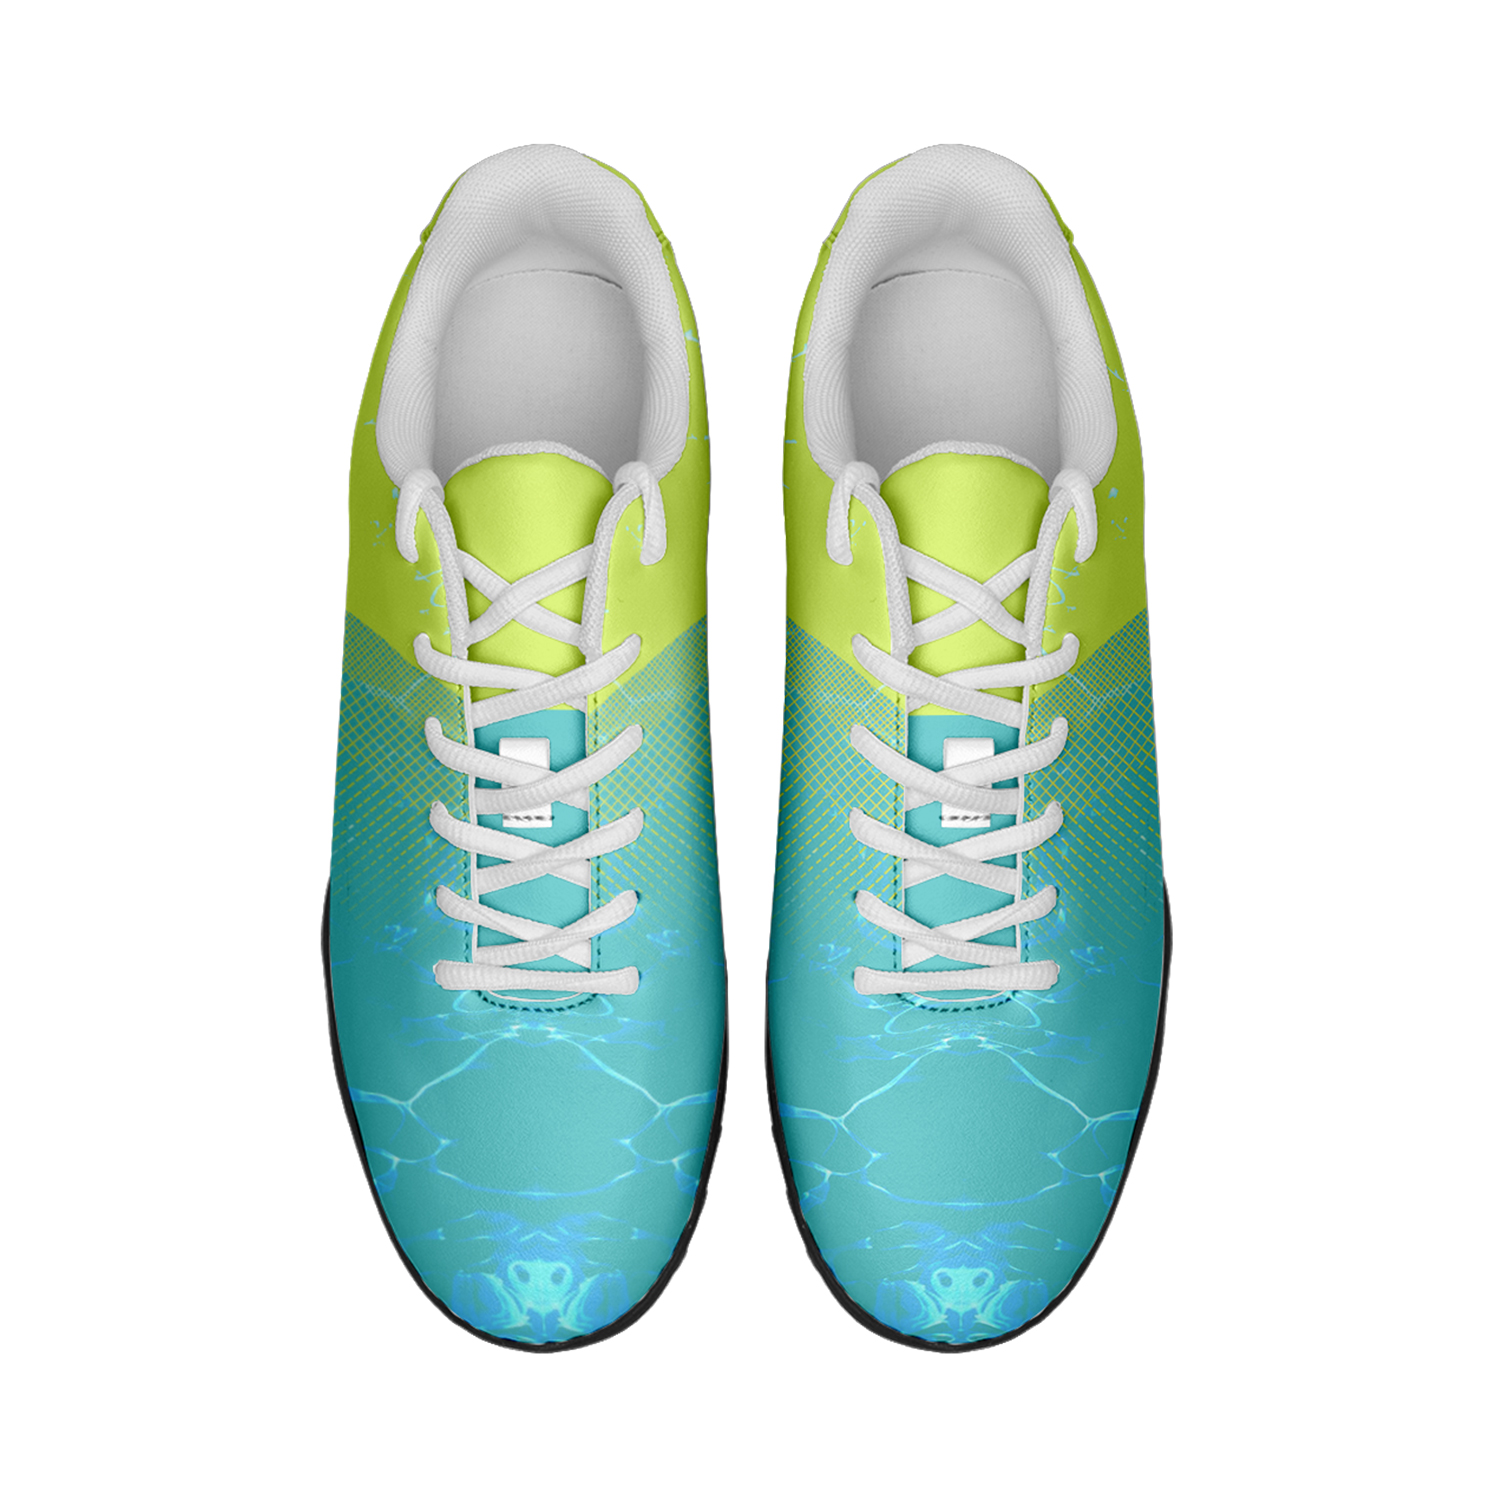 Zapatos de fútbol personalizados del equipo de Arabia Saudita de la Copa Mundial 2022